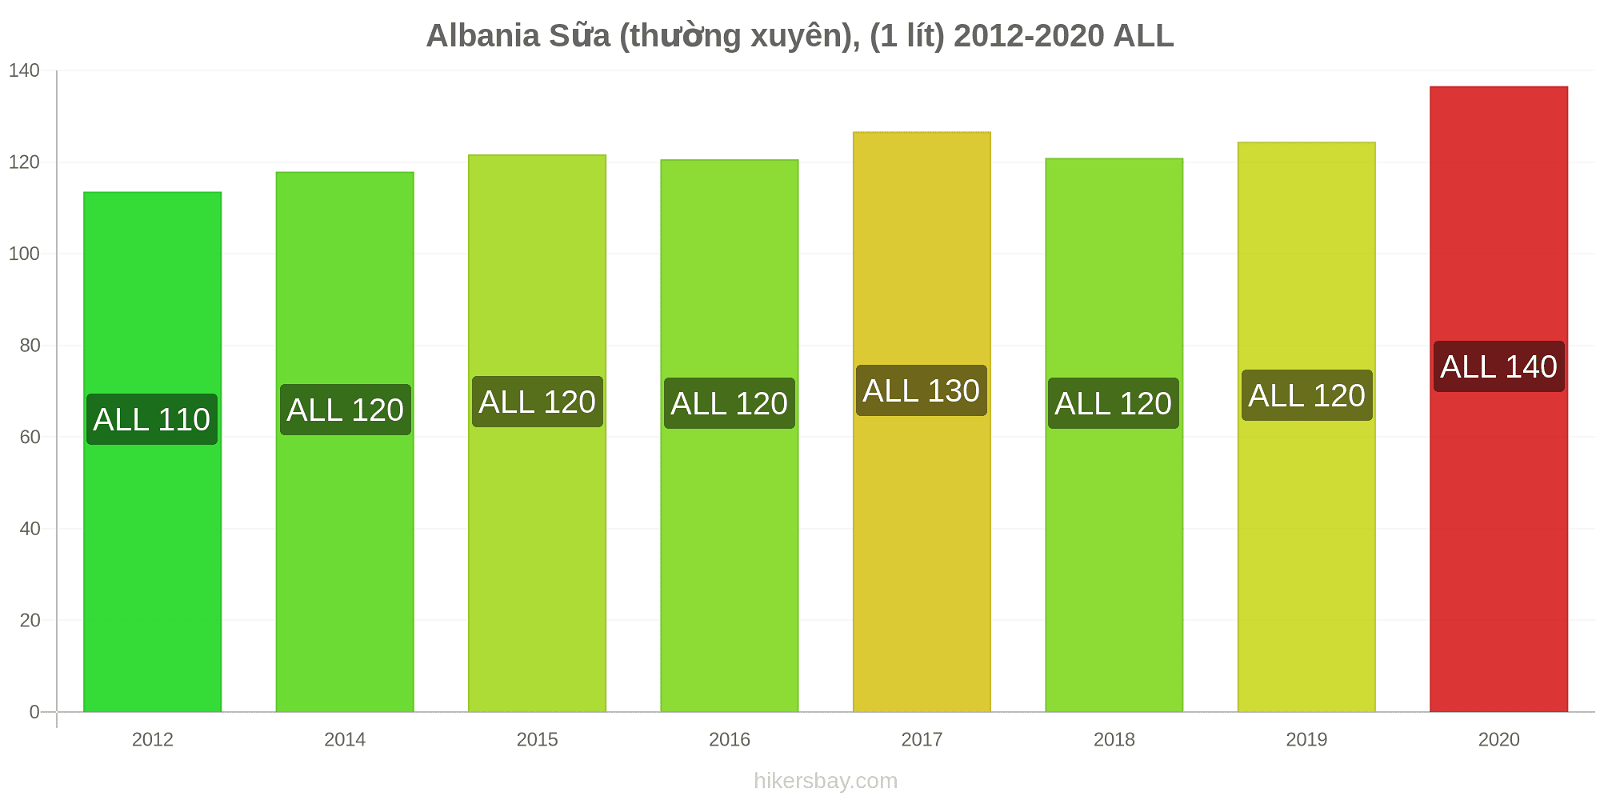 Albania thay đổi giá Sữa (thường xuyên), (1 lít) hikersbay.com